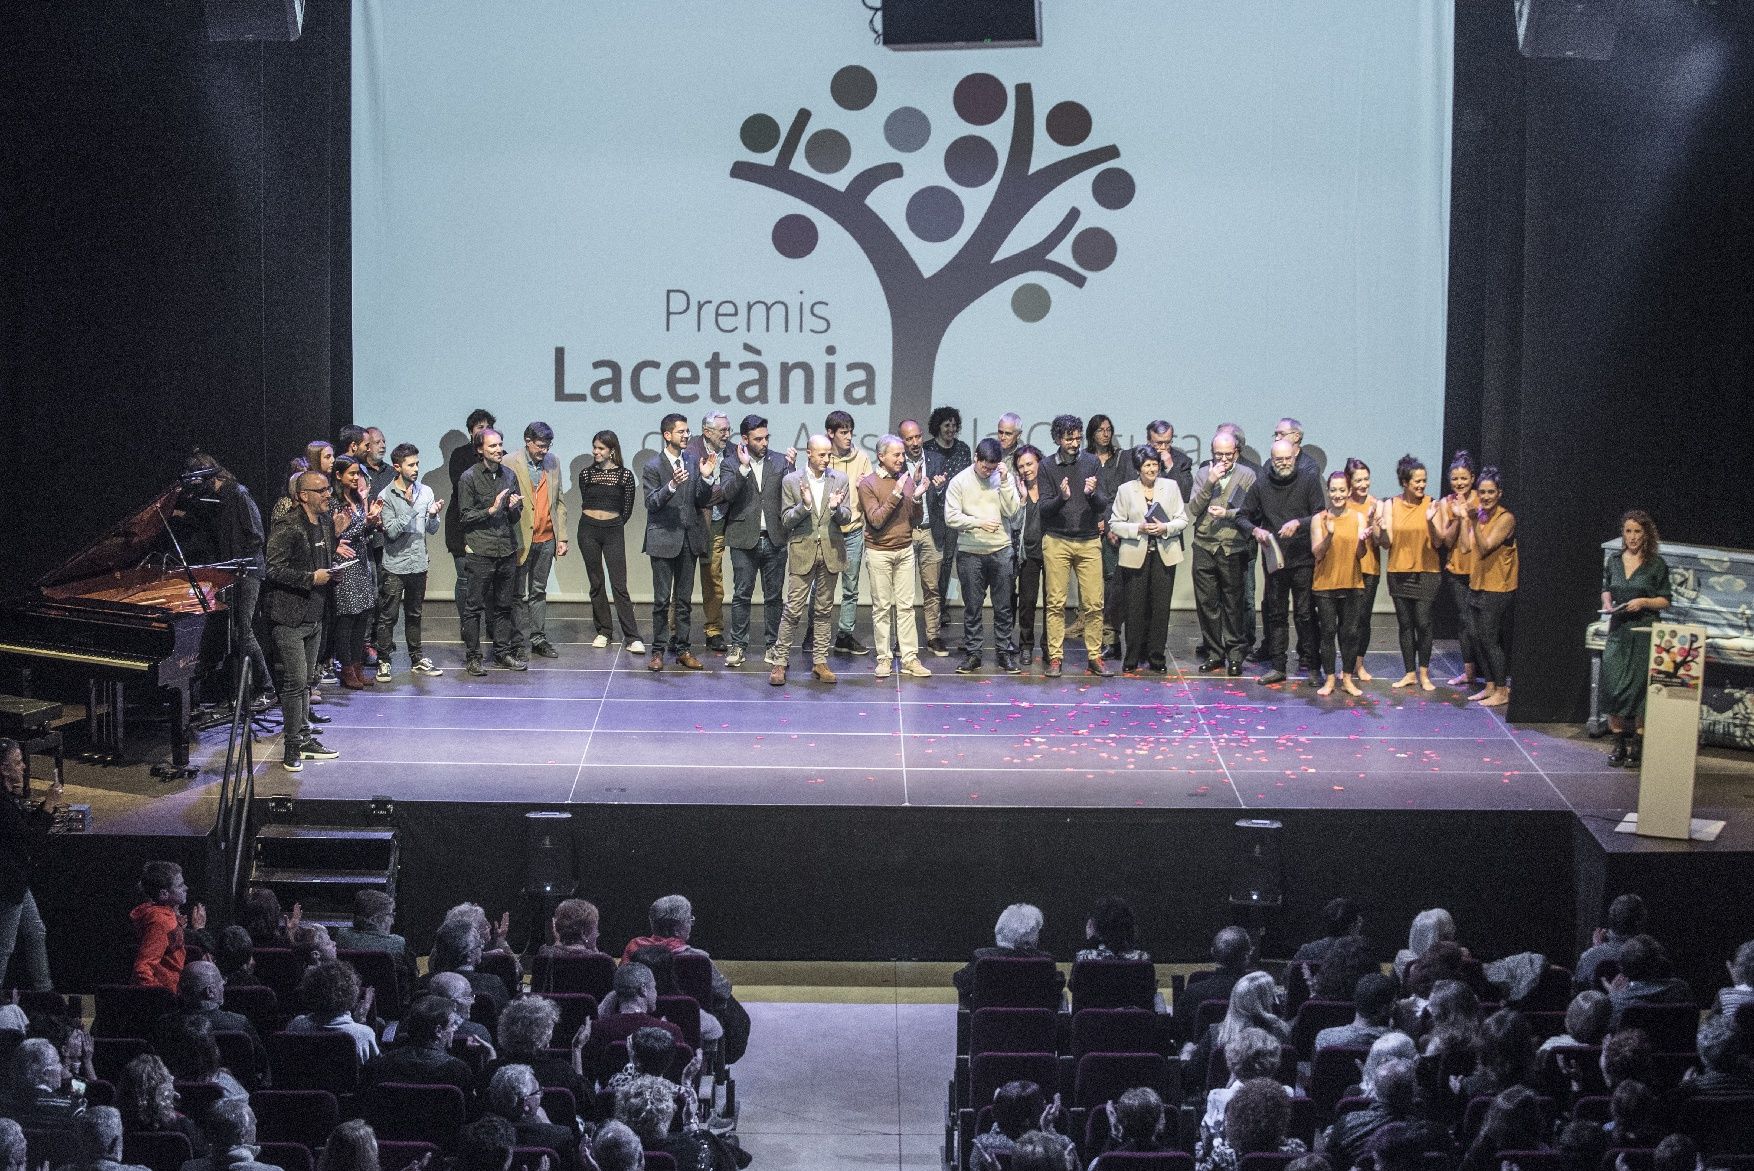 Els Premis Lacetània apleguen unes 300 persones a la Fàbrica Vella de Sallent